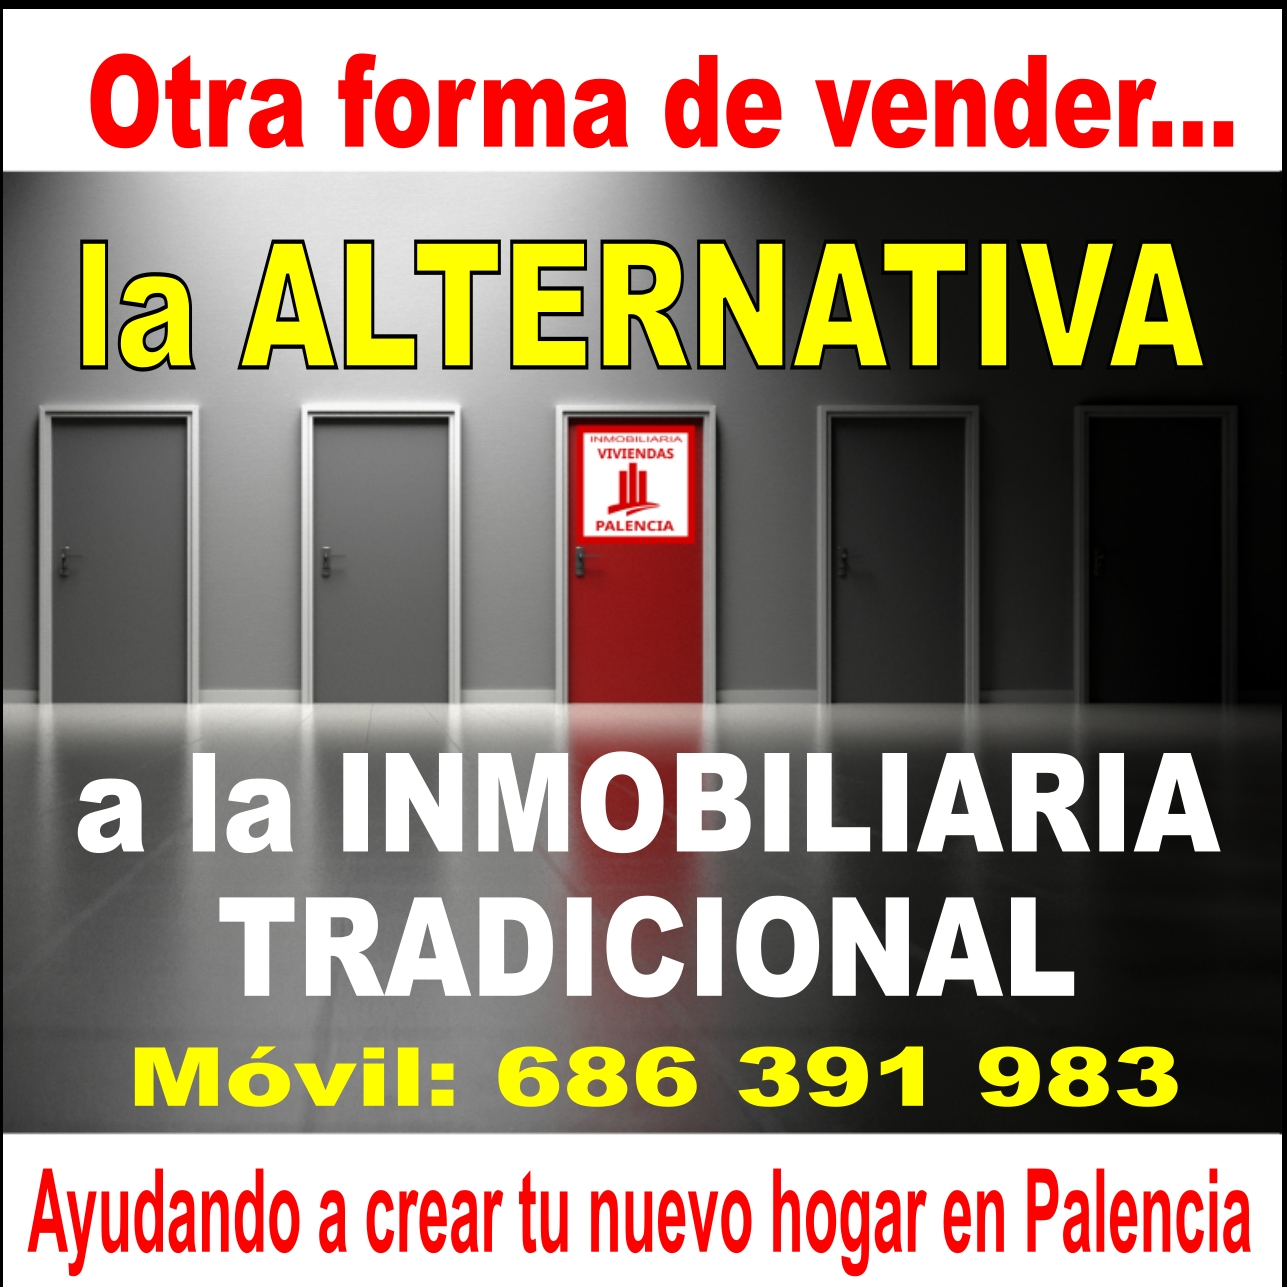 Images Asesoría Inmobiliaria Viviendas Palencia